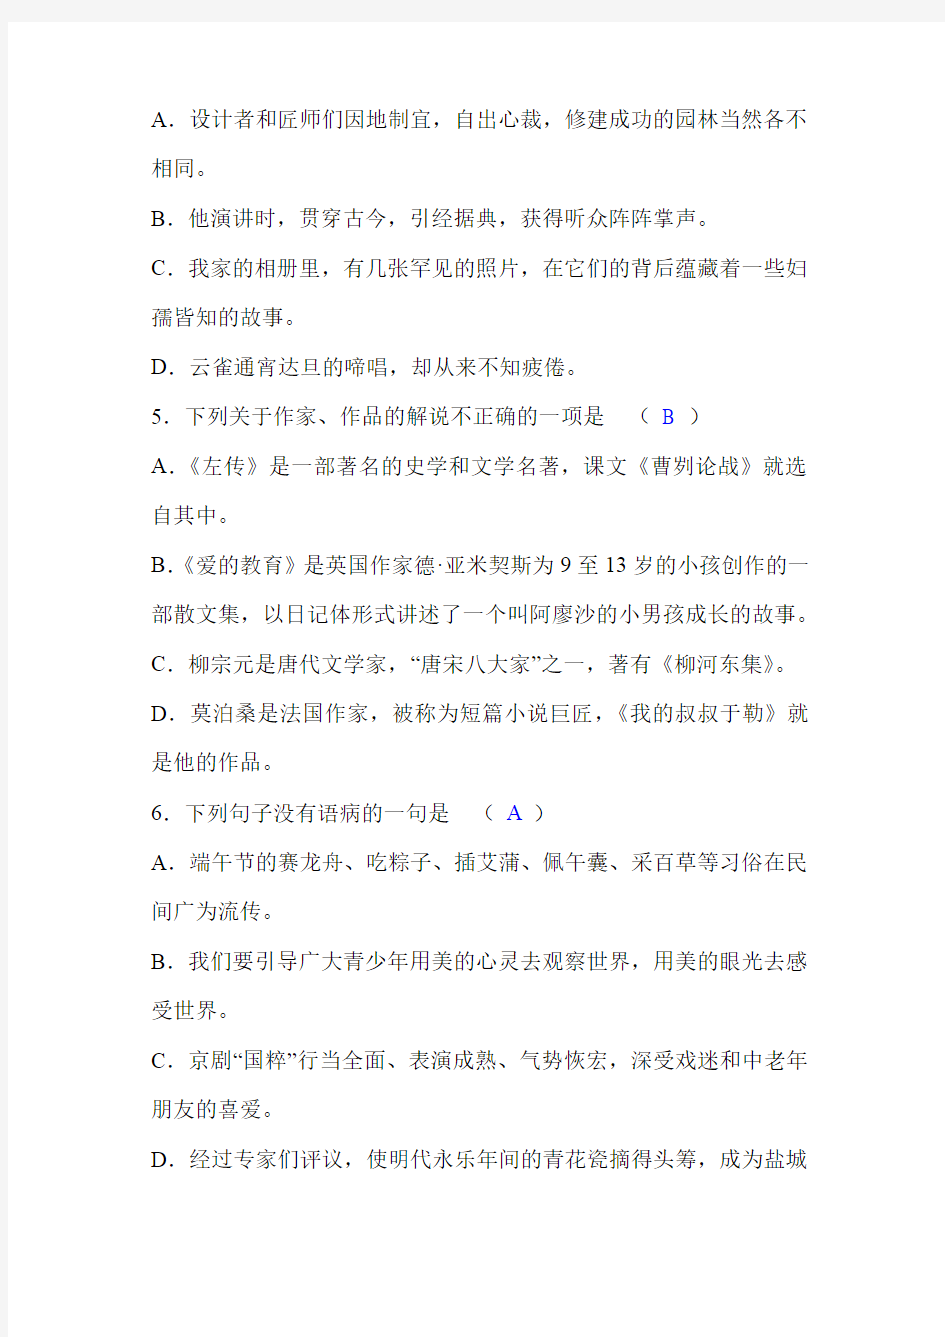 初中语文教师教材教法考试模拟试题(附答案)